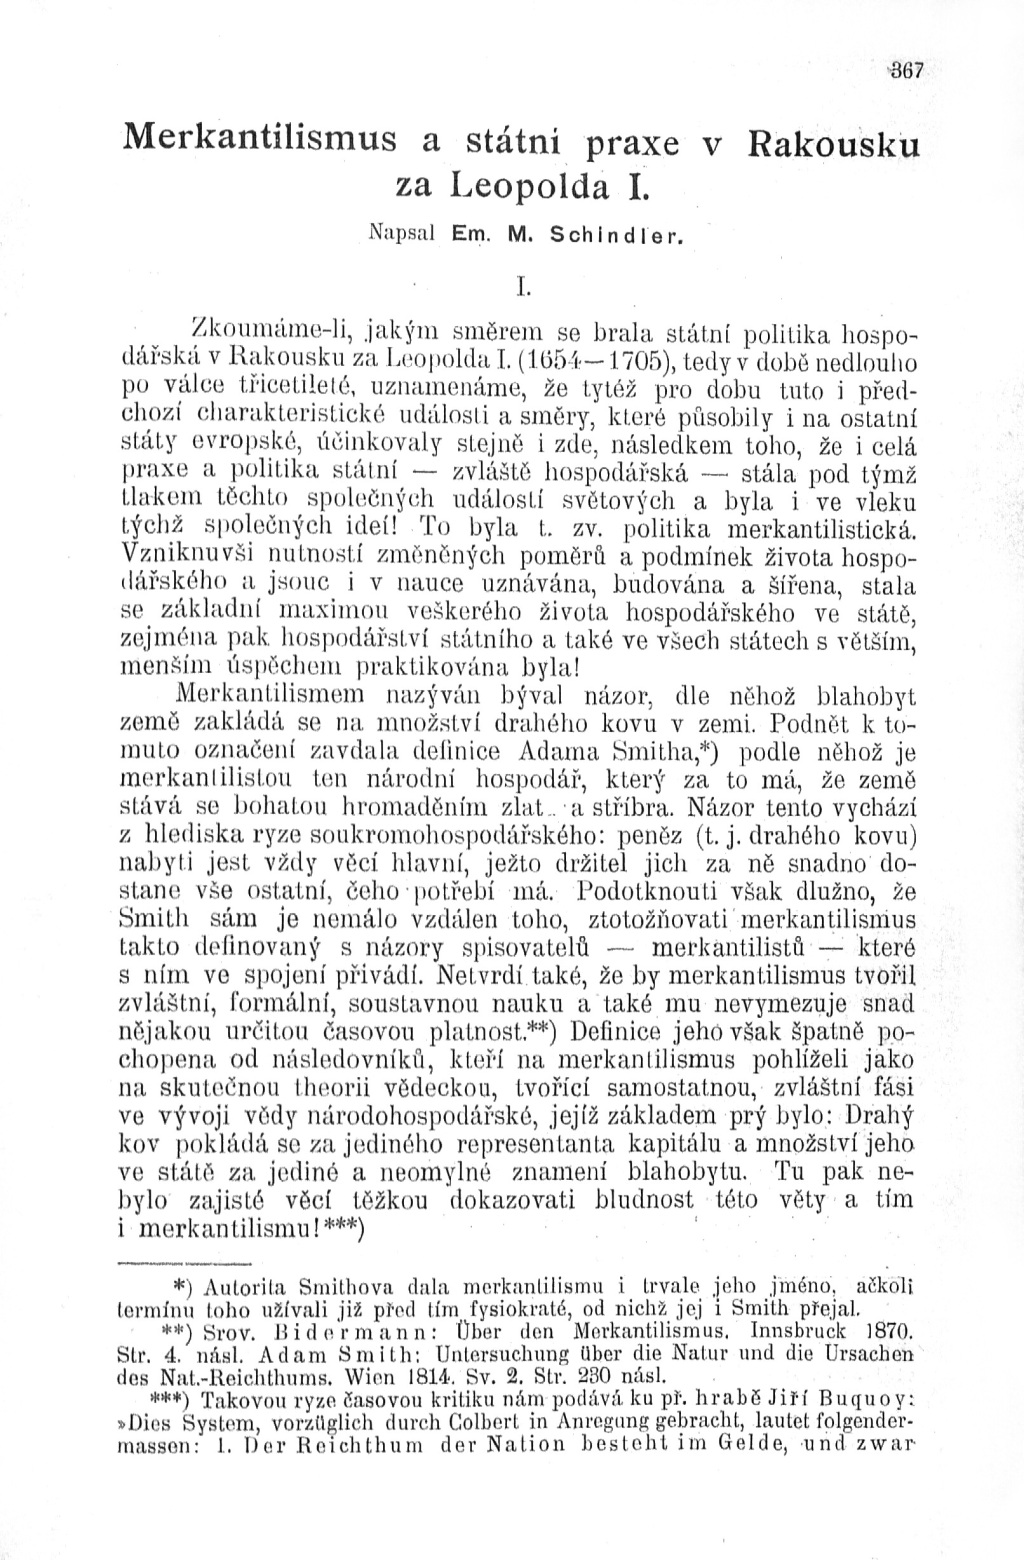 Merkantilismus a státní praxe v Rakousku za Leopolda I.